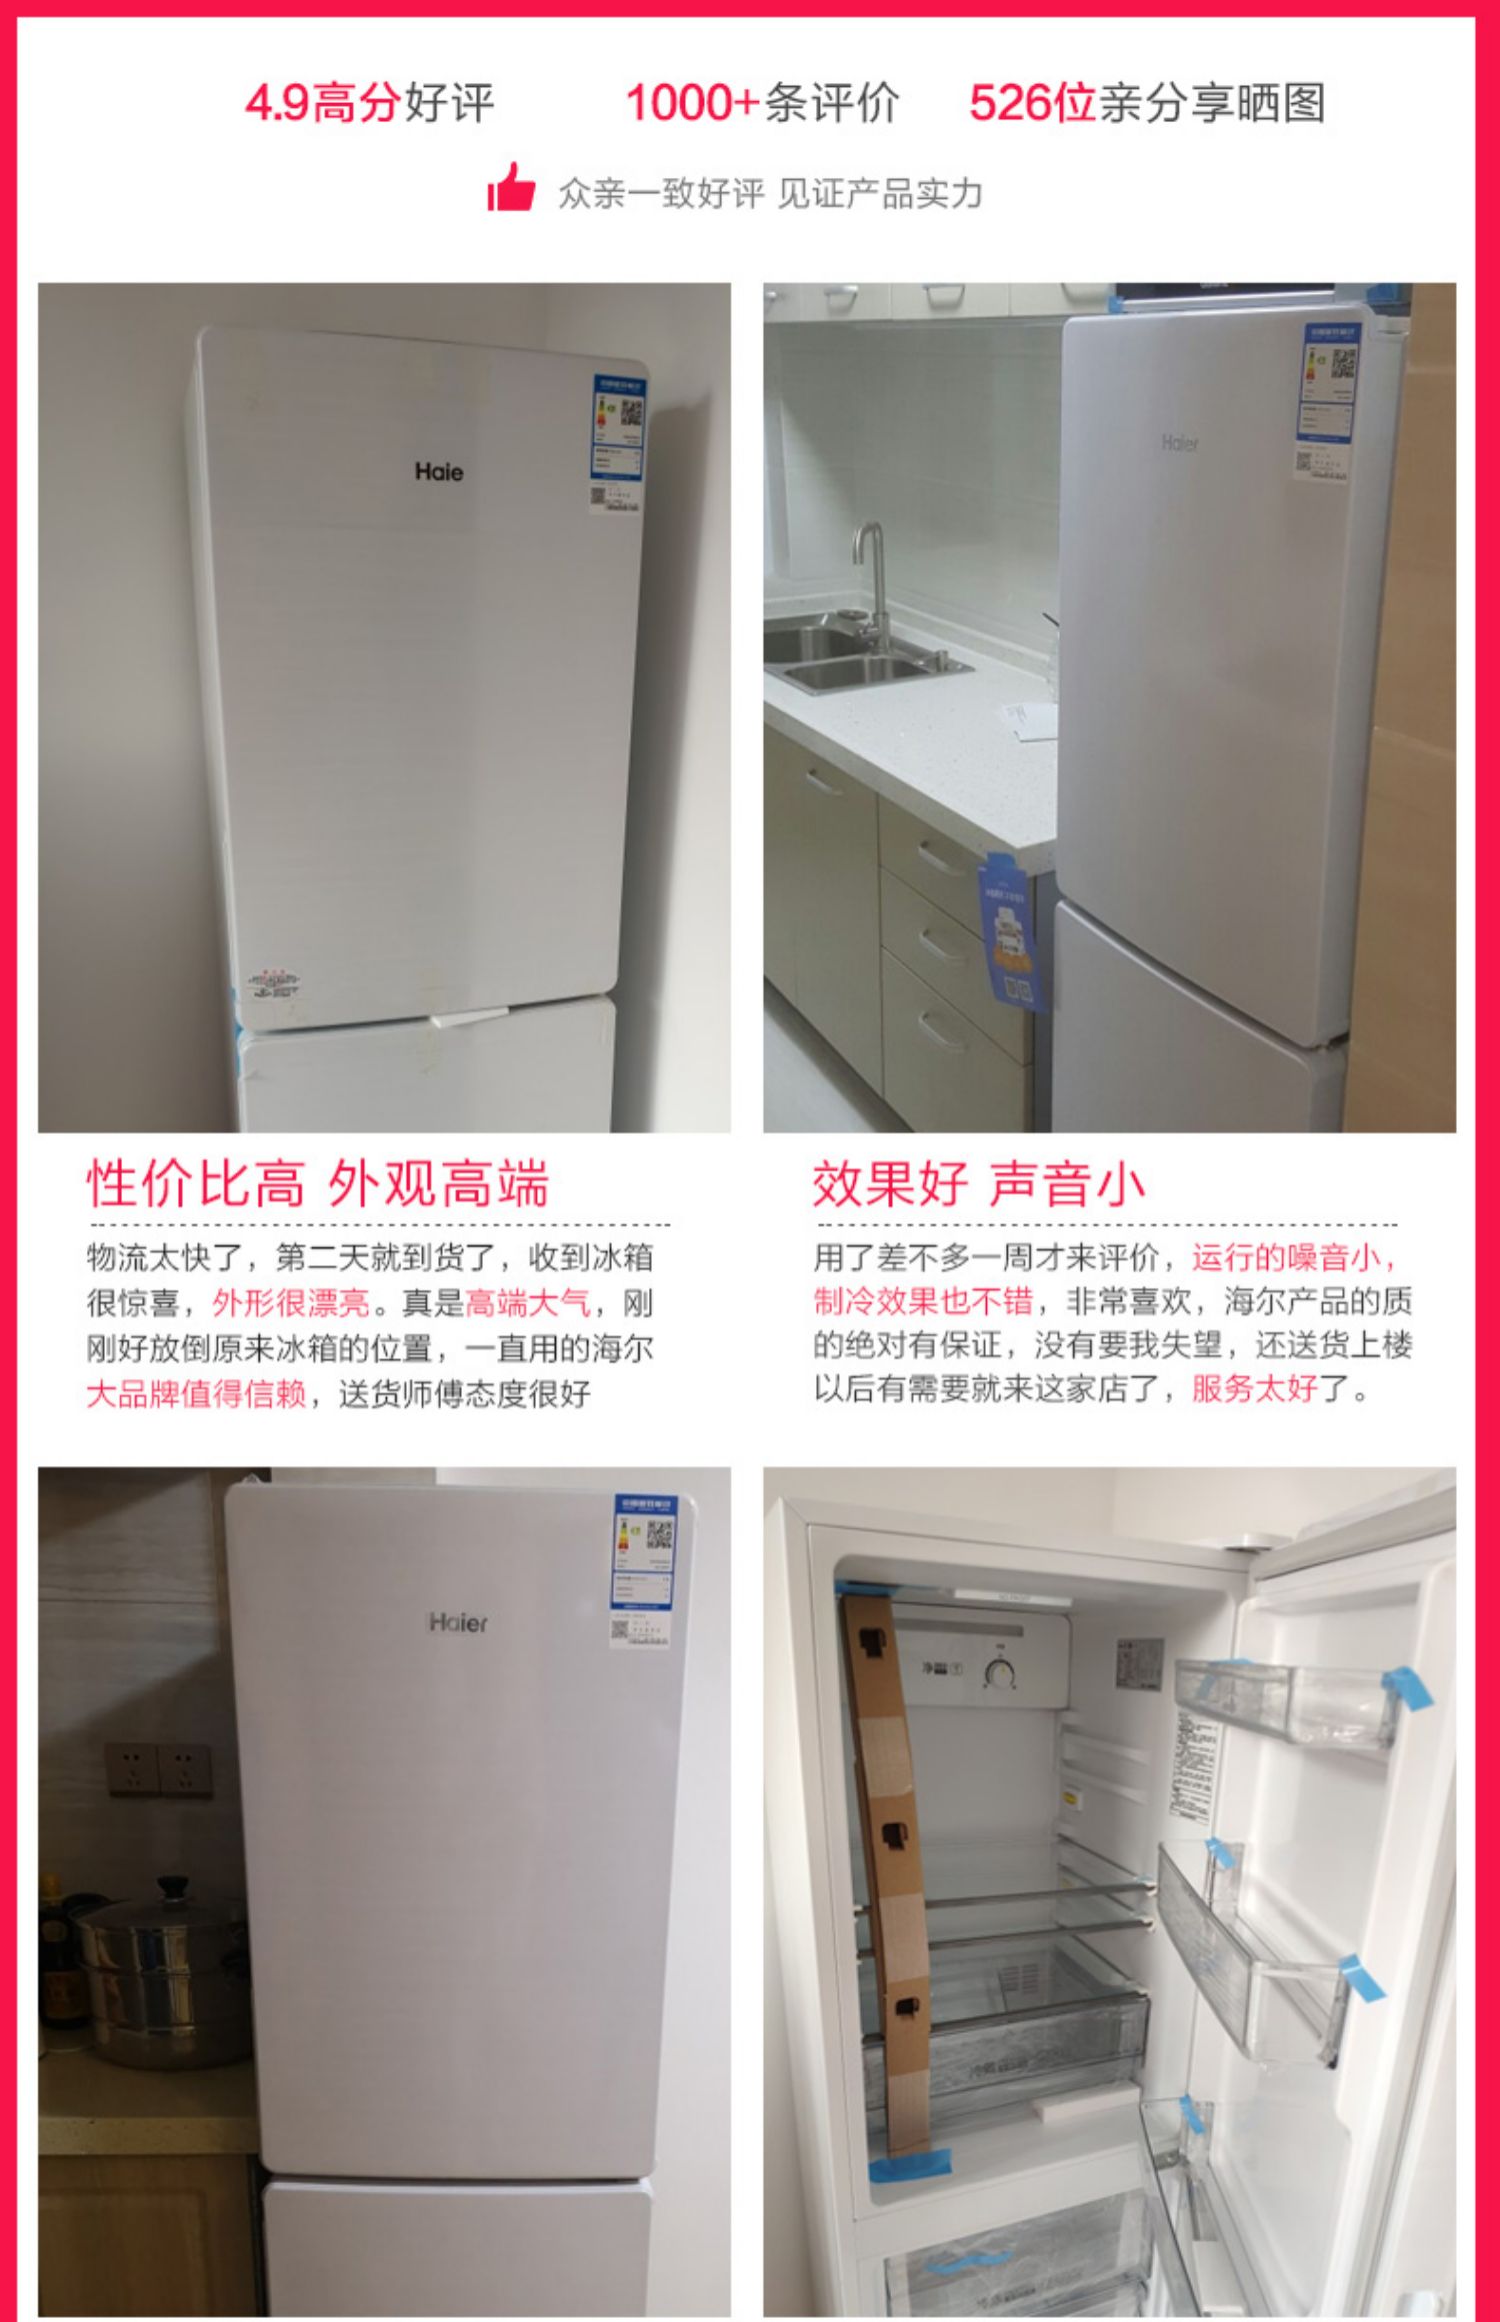 tủ lạnh giá rẻ Tủ lạnh Haier hộ gia đình làm mát bằng không khí lạnh hai cửa nhỏ hai cửa Haier / Haier BCD-189WDPV điện máy xanh tủ lạnh mini